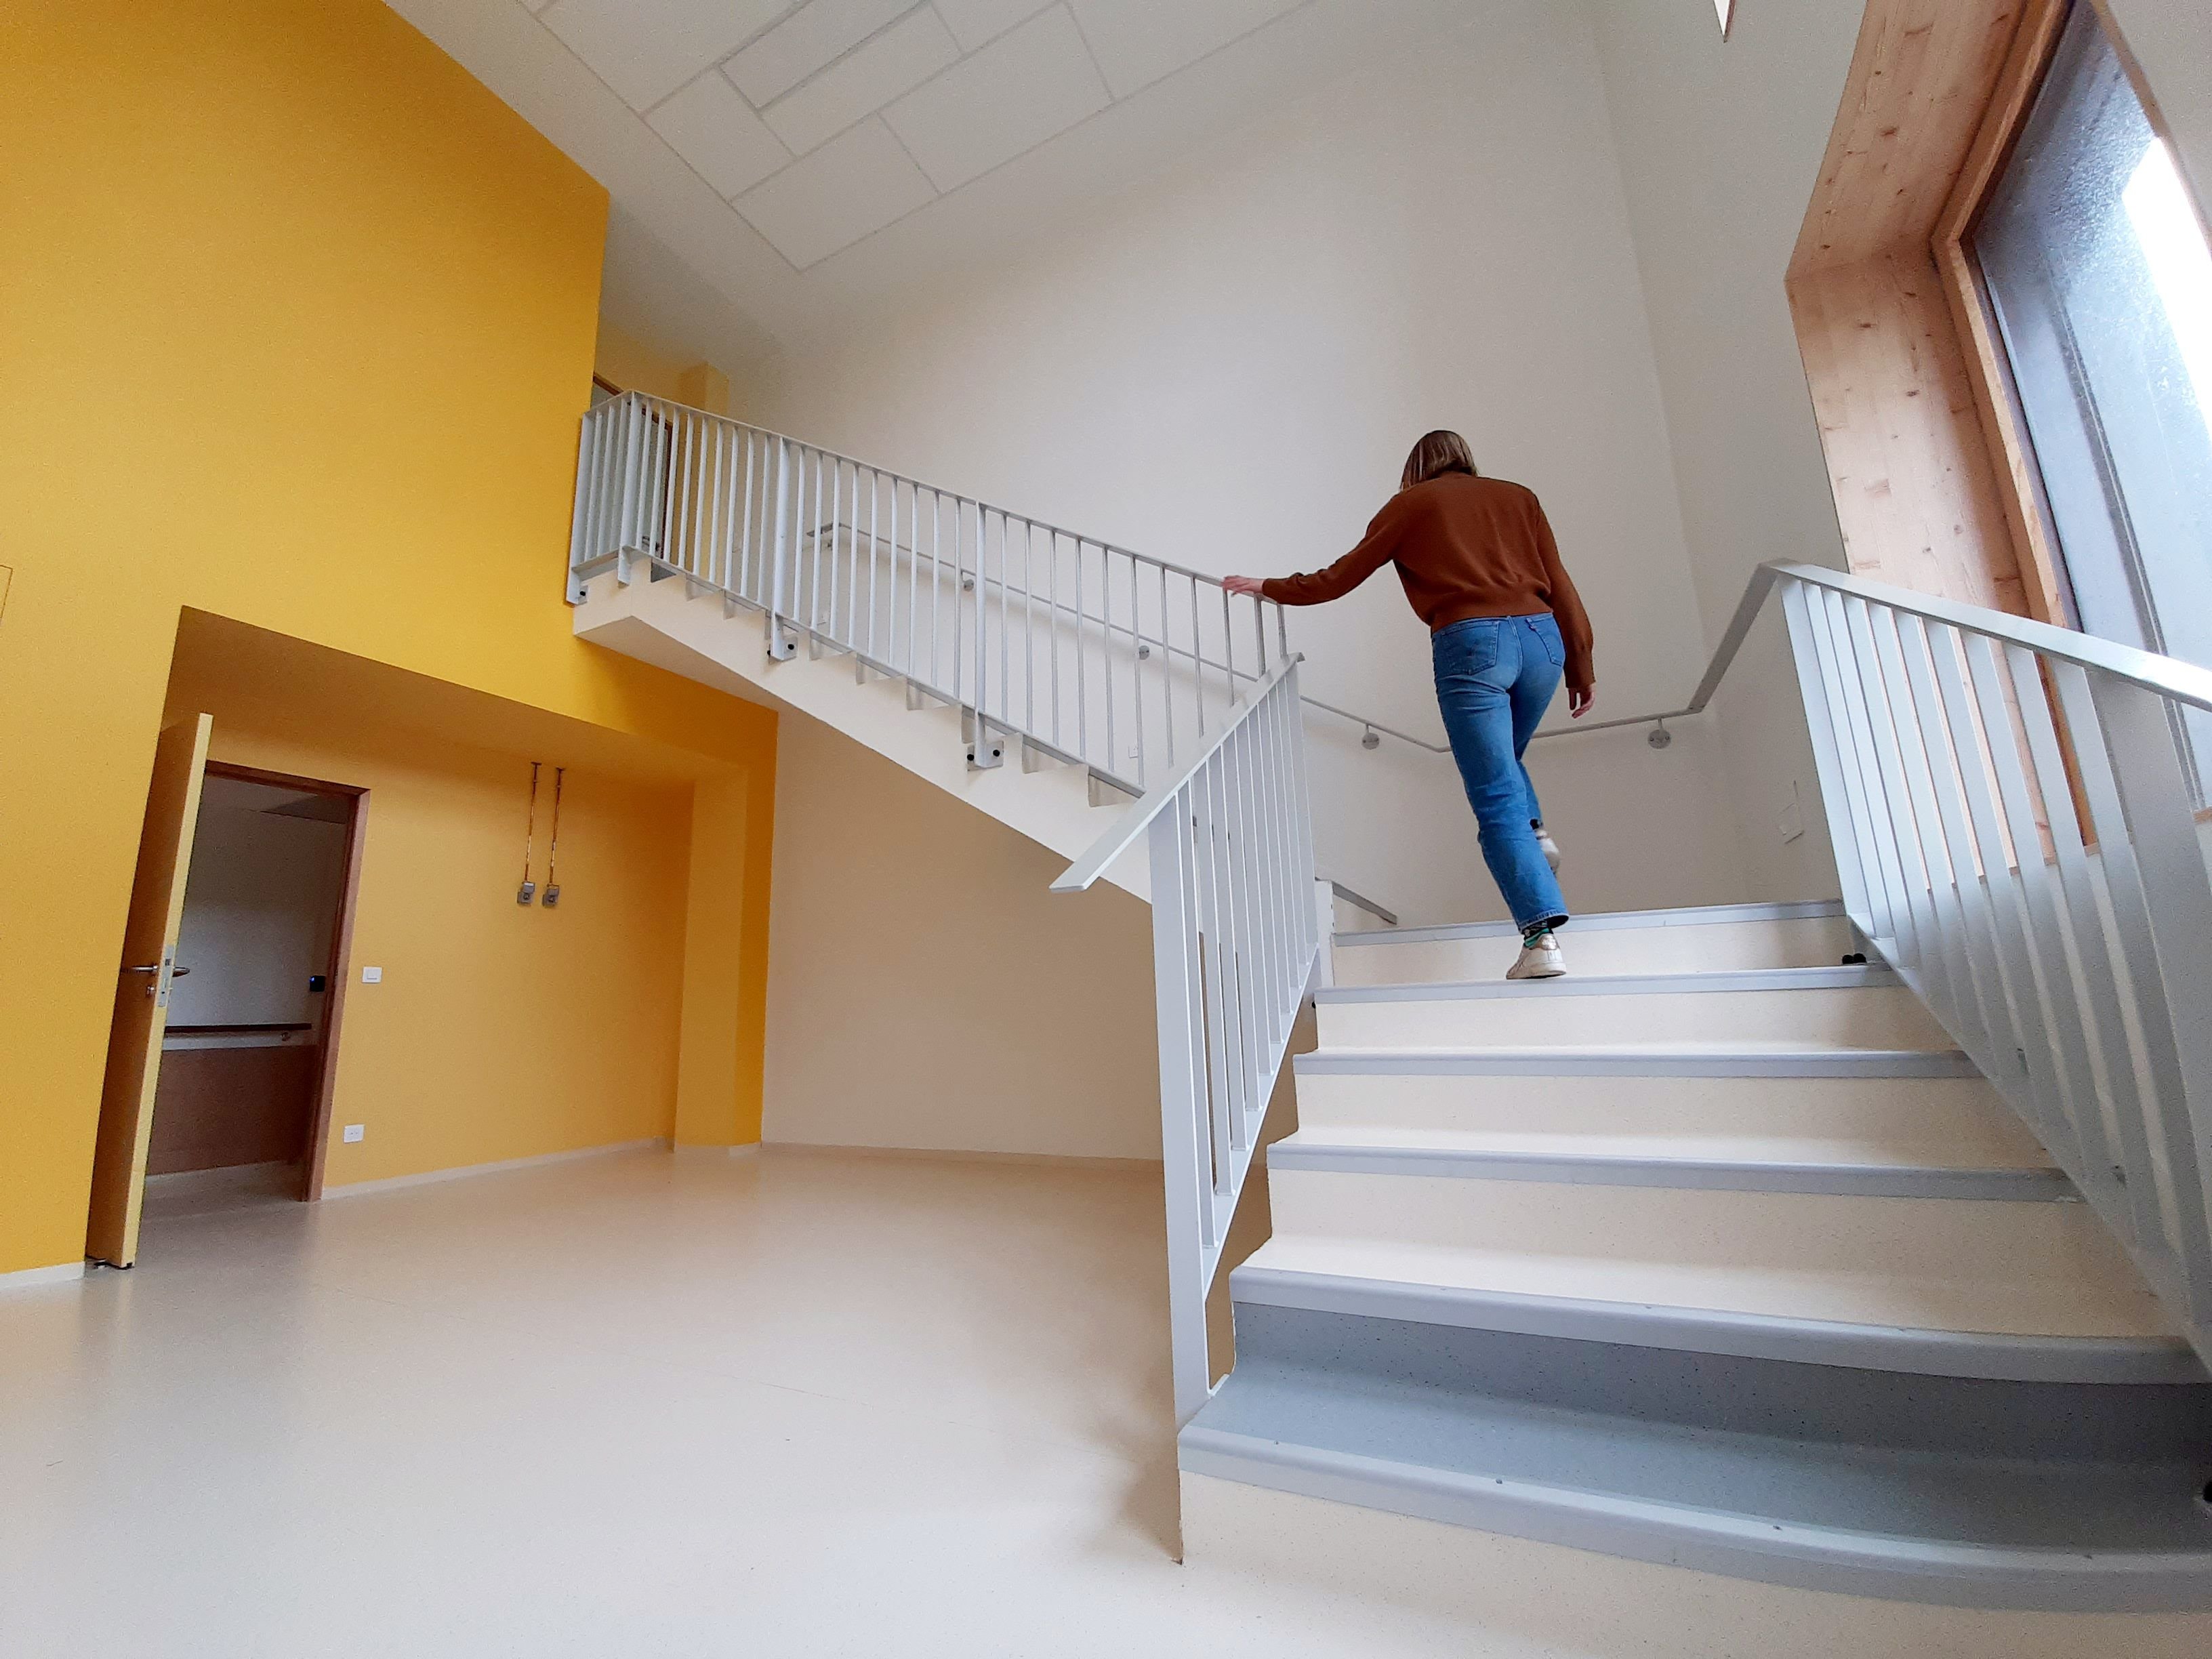 Ivry-sur-Seine (Val-de-Marne), le 6 mai. Cet escalier qui ne mène nulle part permettra d'étudier la capacité respiratoire ou la mobilité d'une personne, par exemple. LP/Marine Legrand